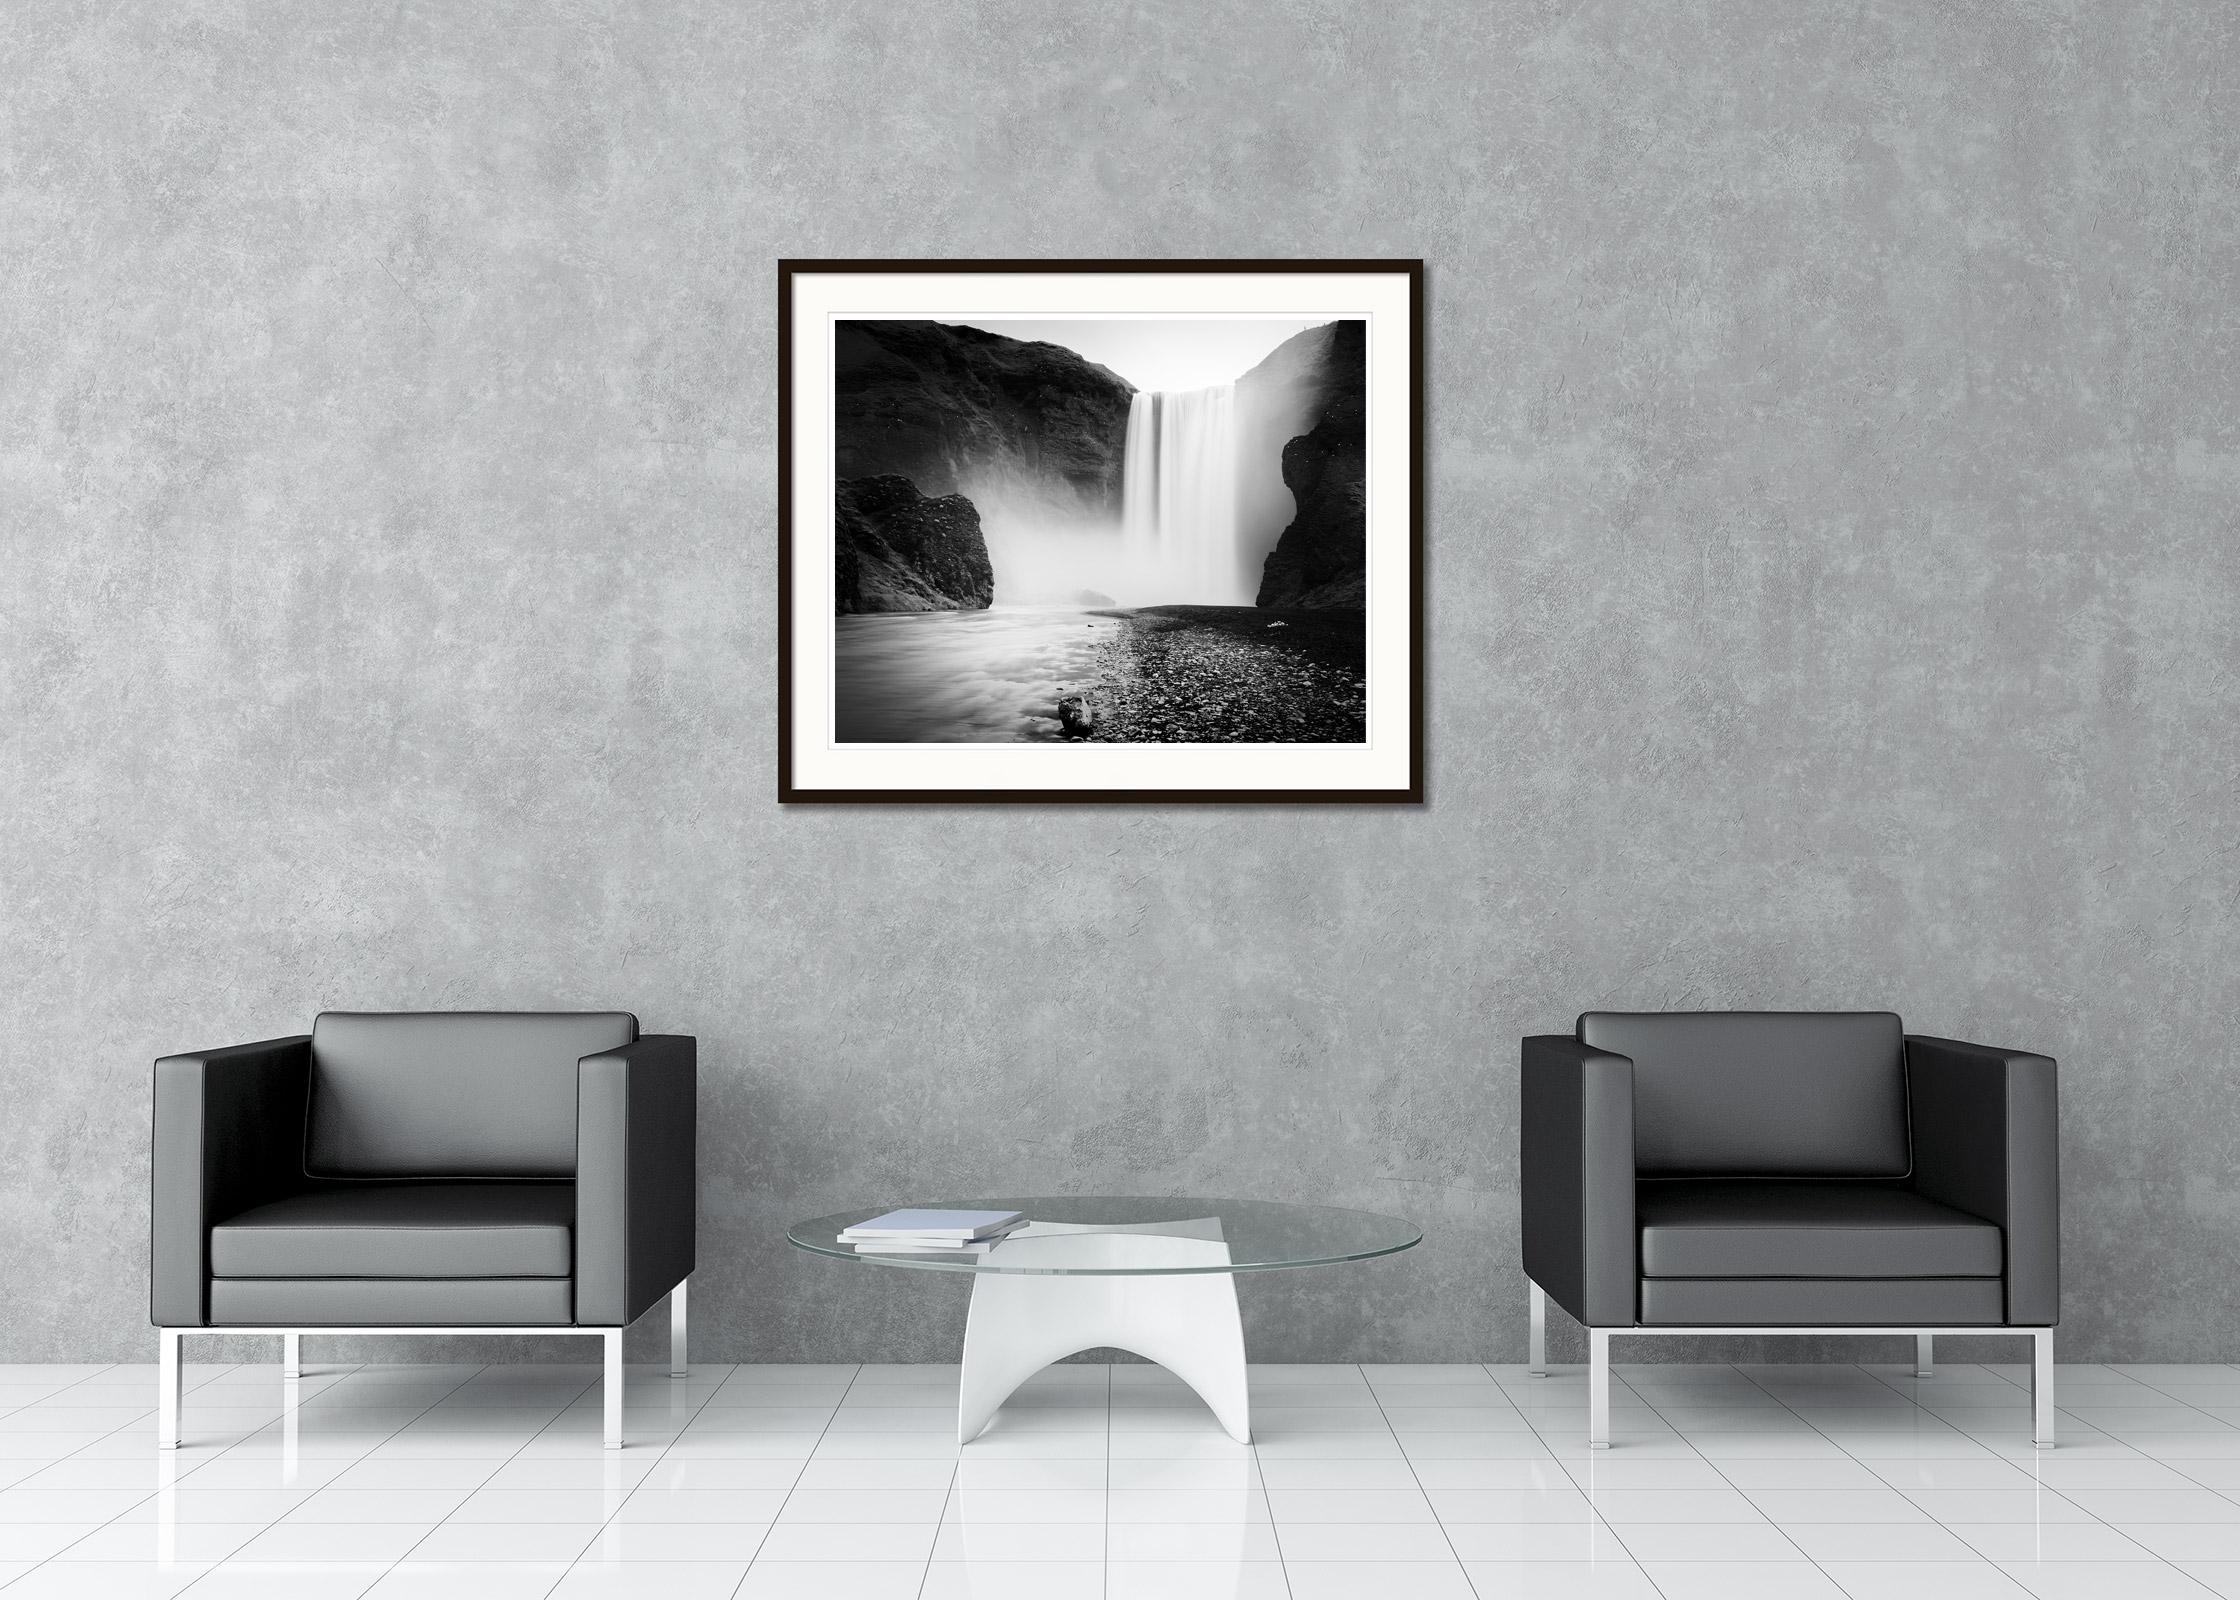 Schwarz-Weiß-Fotografie mit Langzeitbelichtung für Wasserlandschaften - Landschaftsfotografie. Gigantischer Wasserfall Skogafoss, Island. Pigmenttintendruck, Auflage 7, signiert, betitelt, datiert und nummeriert vom Künstler. Mit